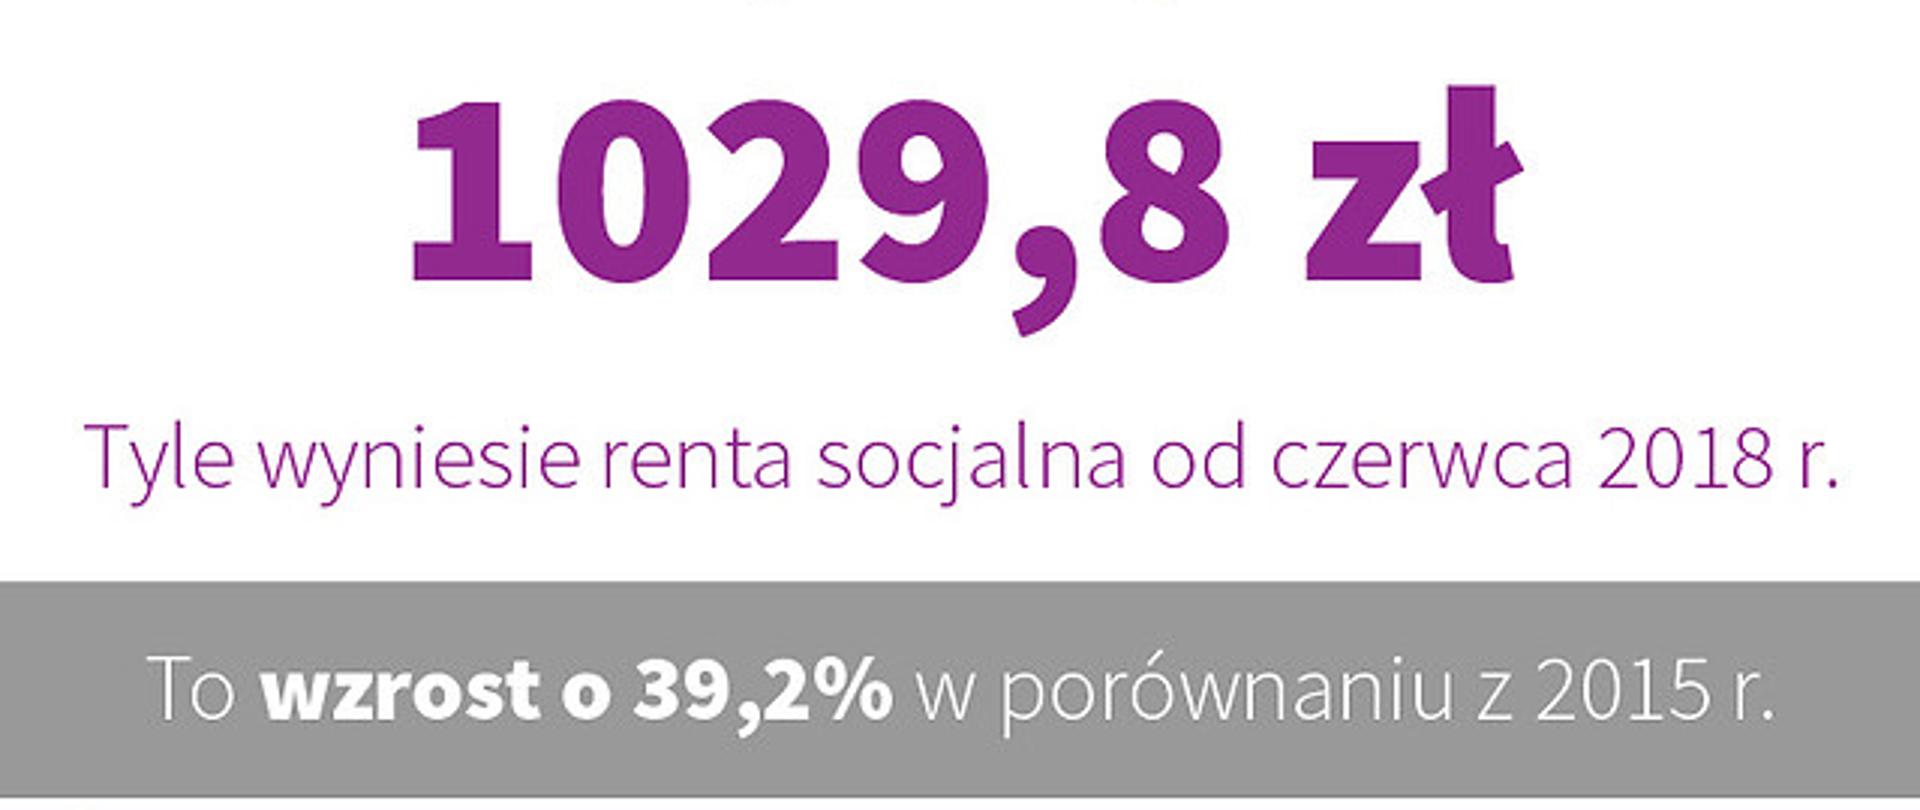 Renta socjalna od czerwca 2018 r. wynosi 1029,8 zł